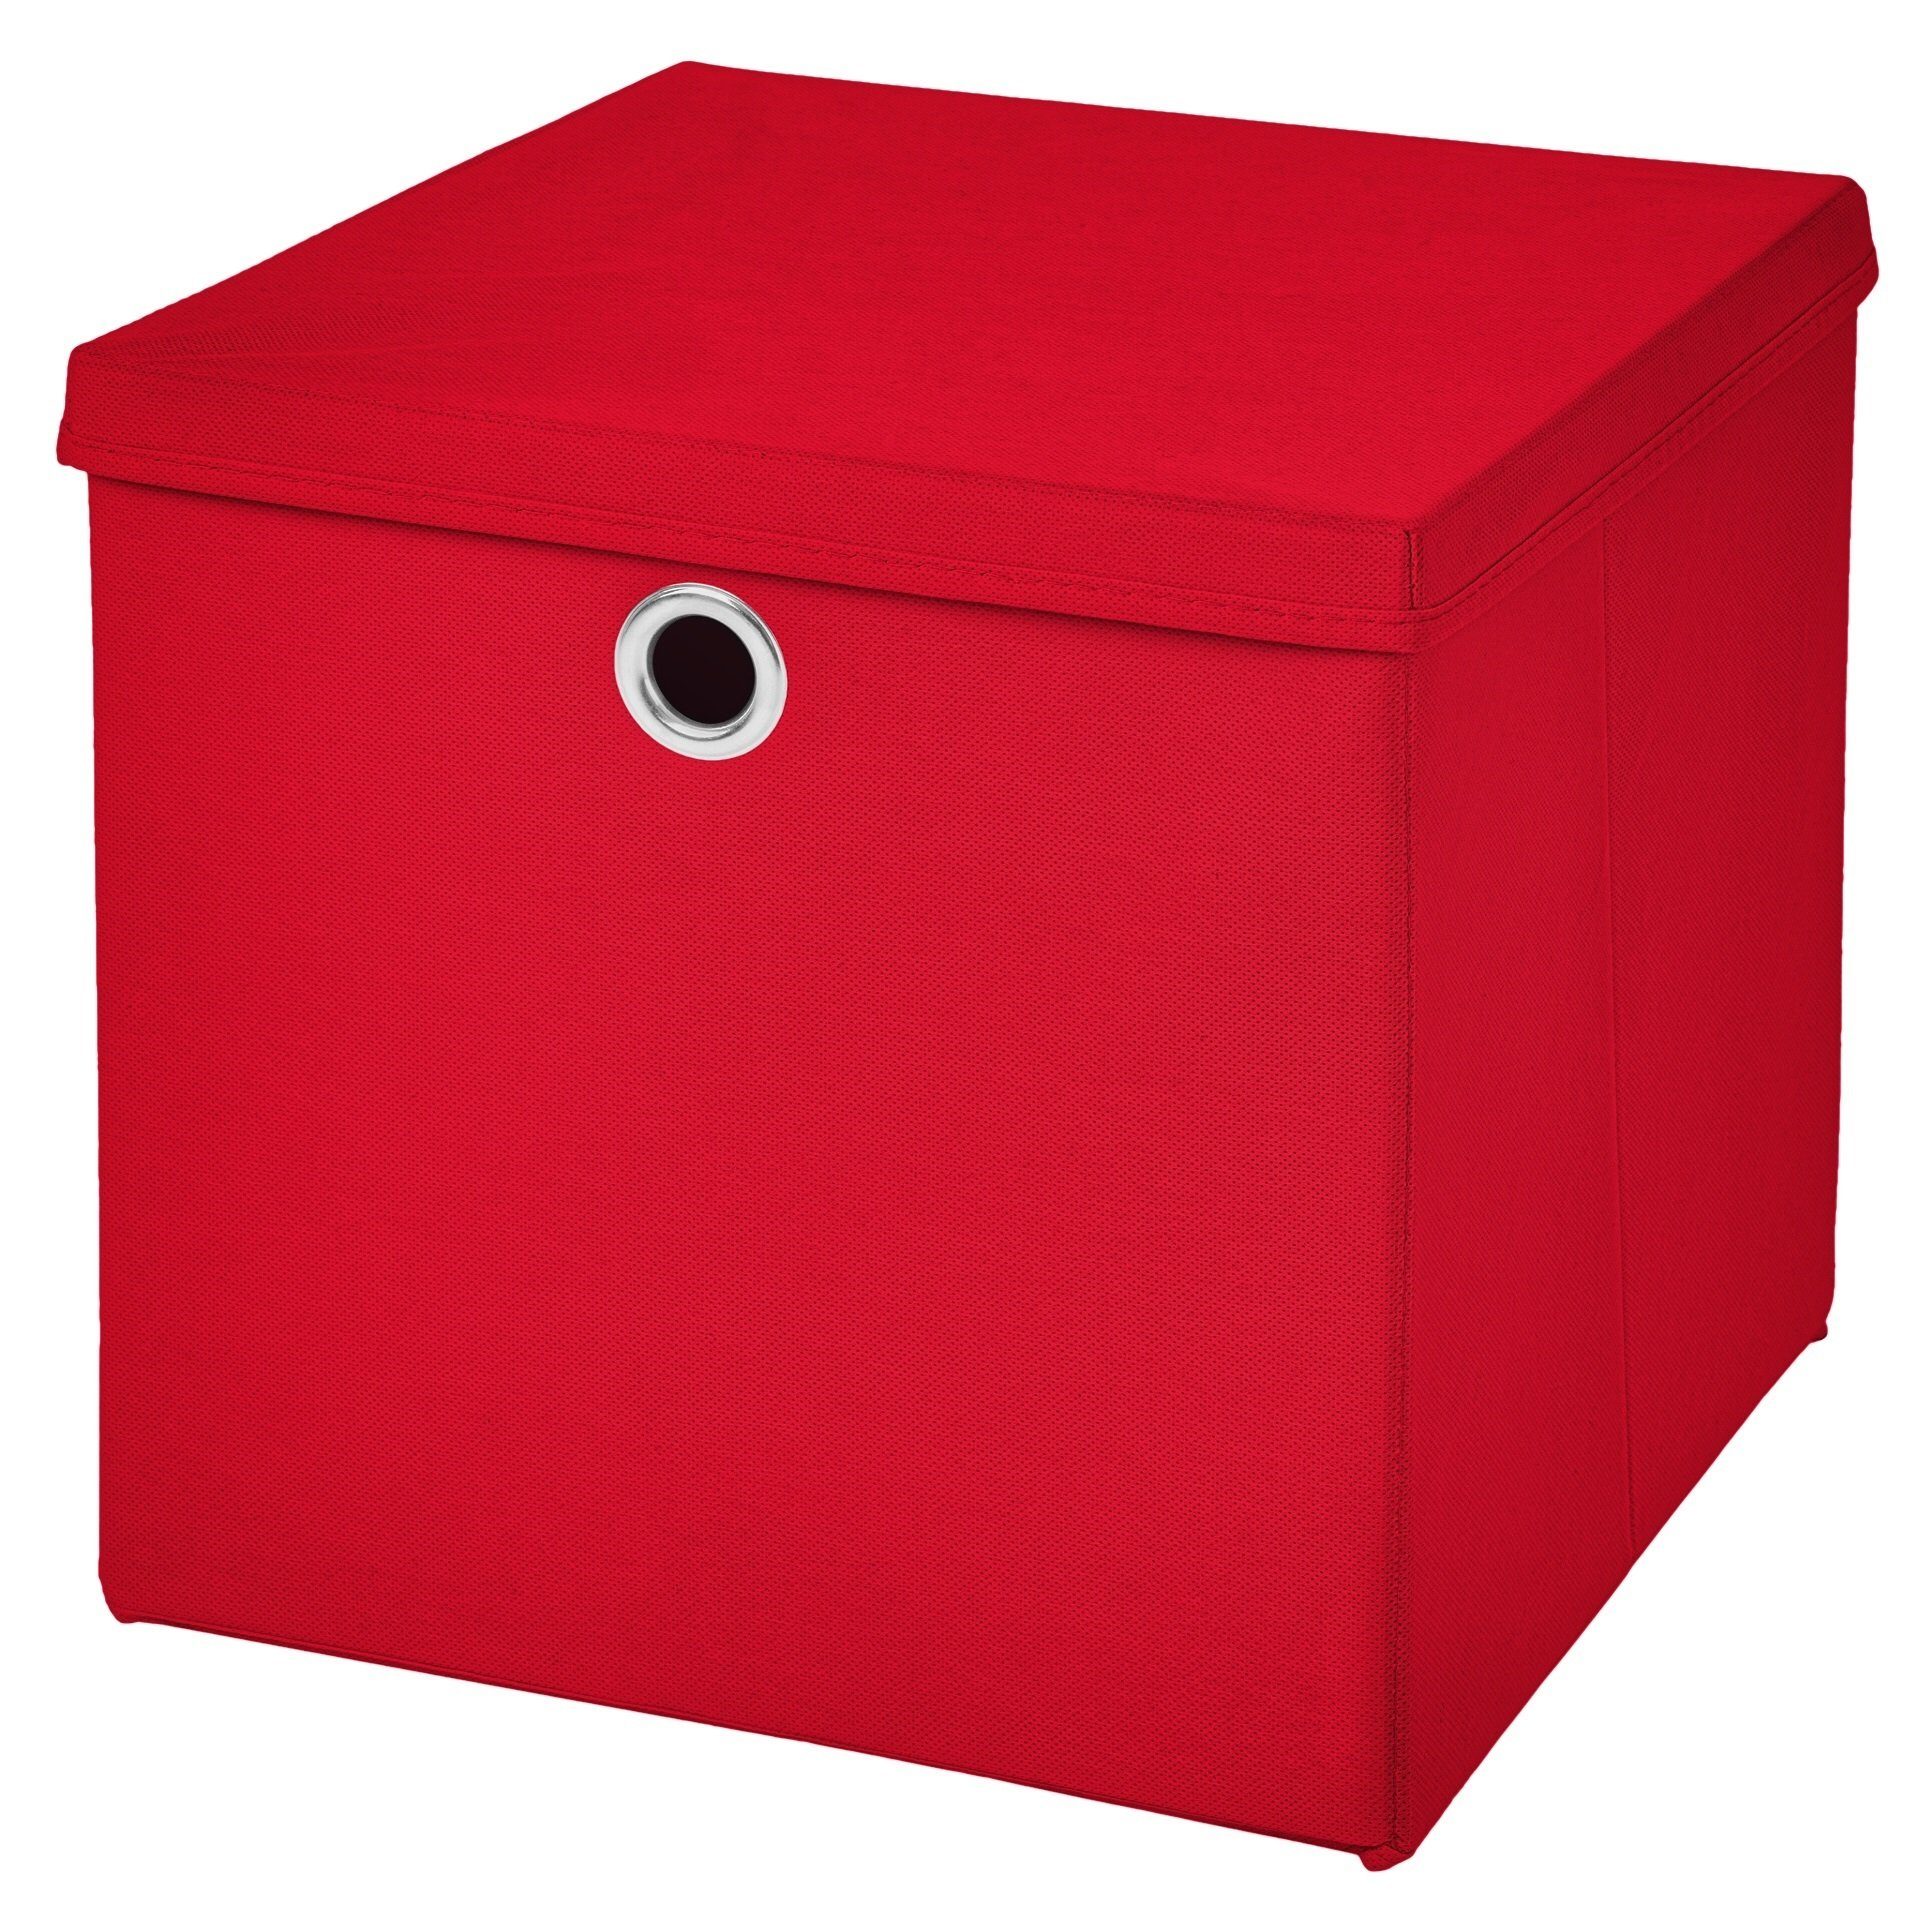 StickandShine Faltbox Faltboxen Aufbewahrungsboxen in 15x15 / 25x25 / 28x28 / 30x30 / 32x32 sowie 33x33 cm zur Wahl in verschiedenen Farben